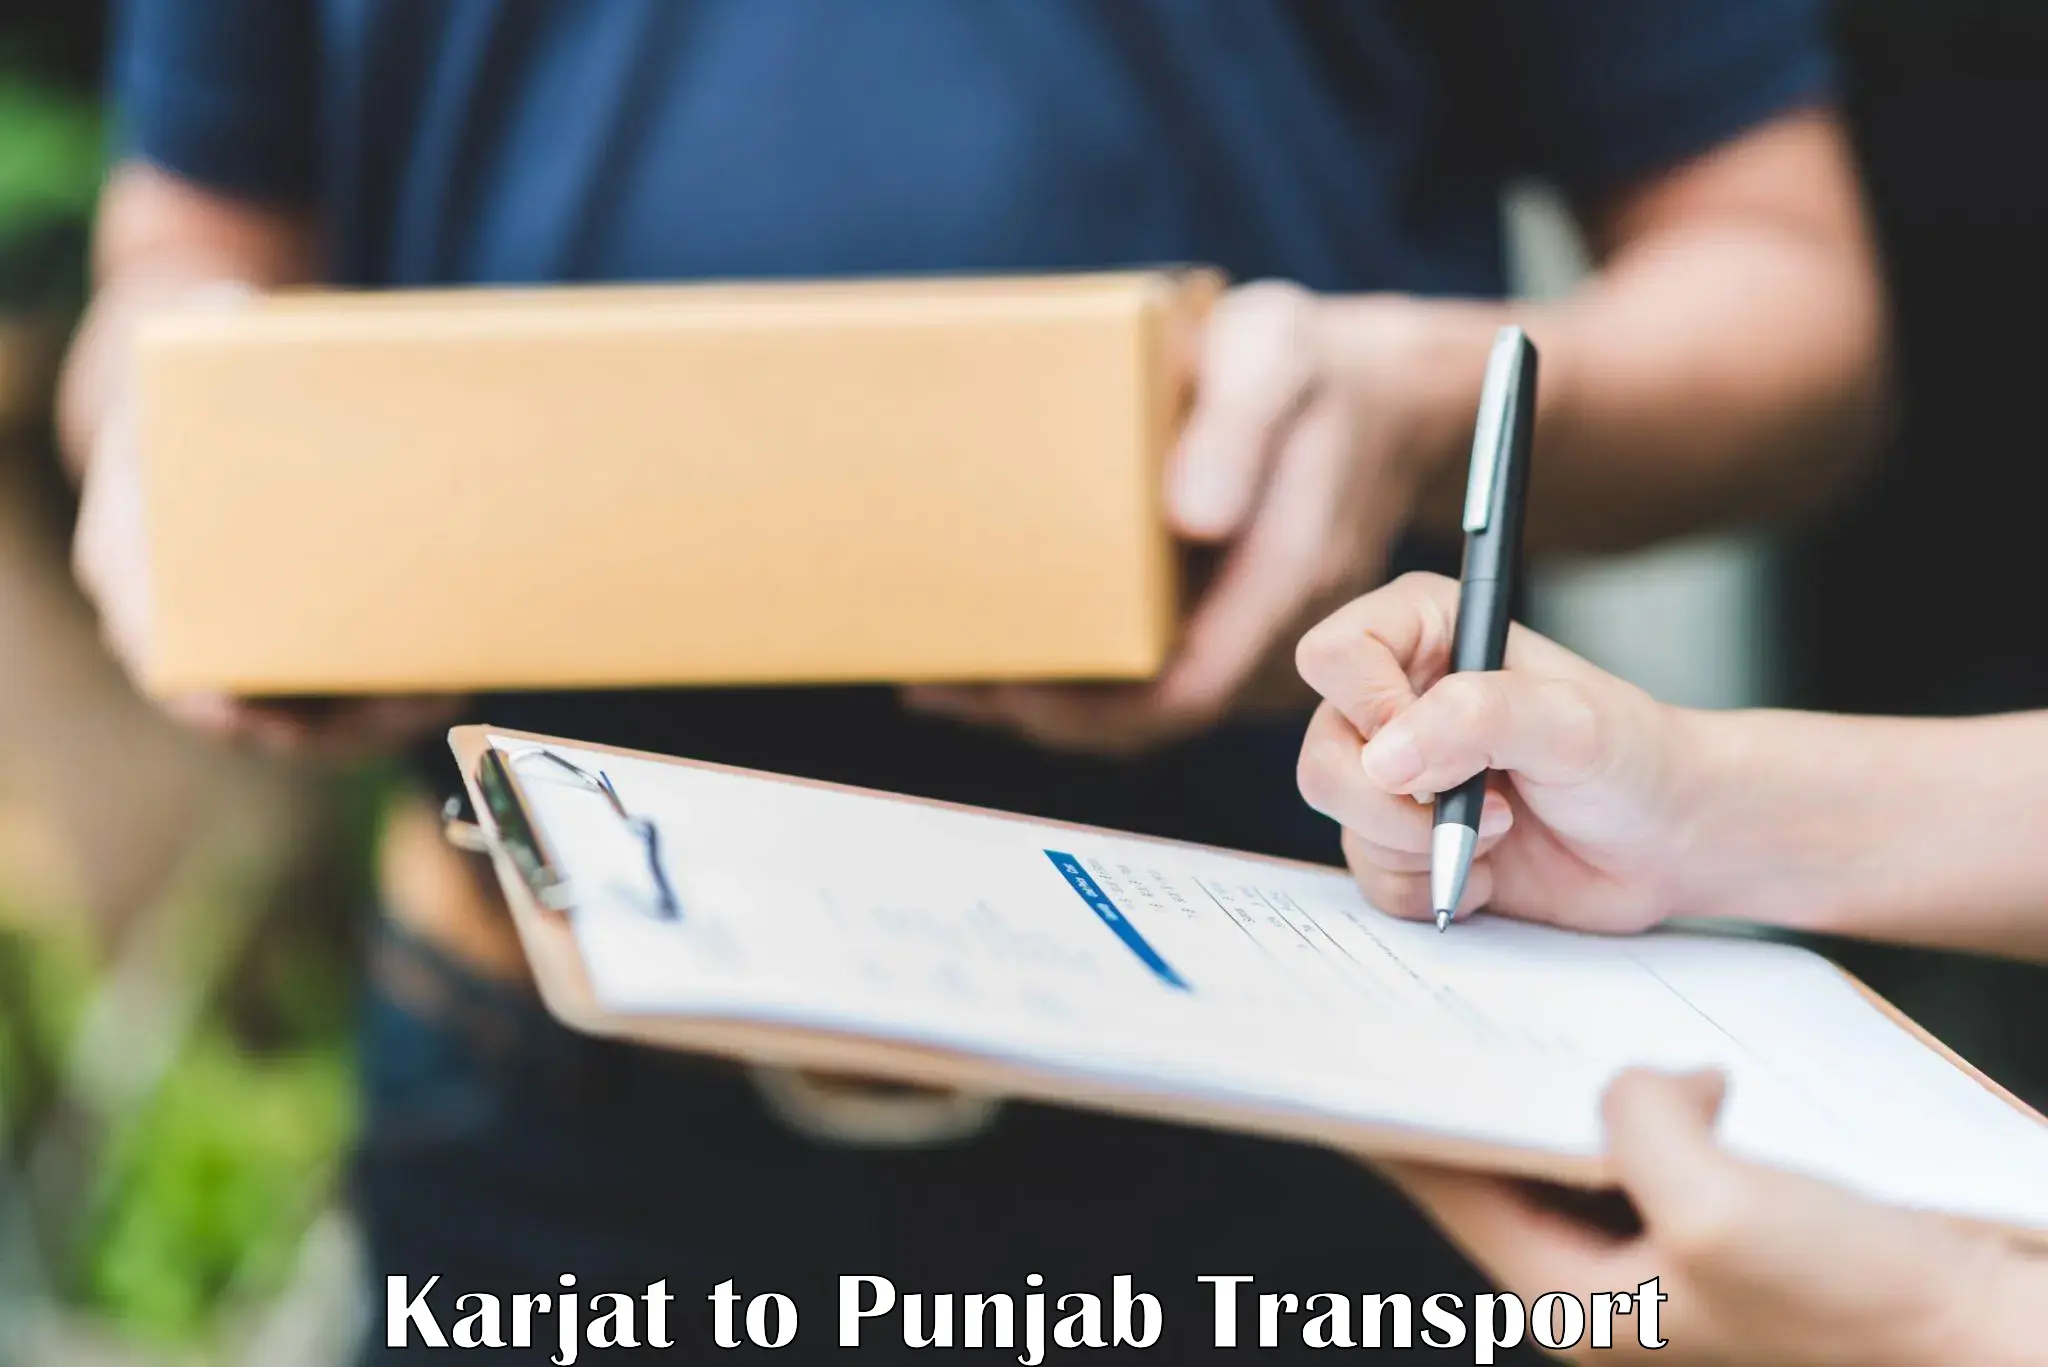 Furniture transport service Karjat to Punjab